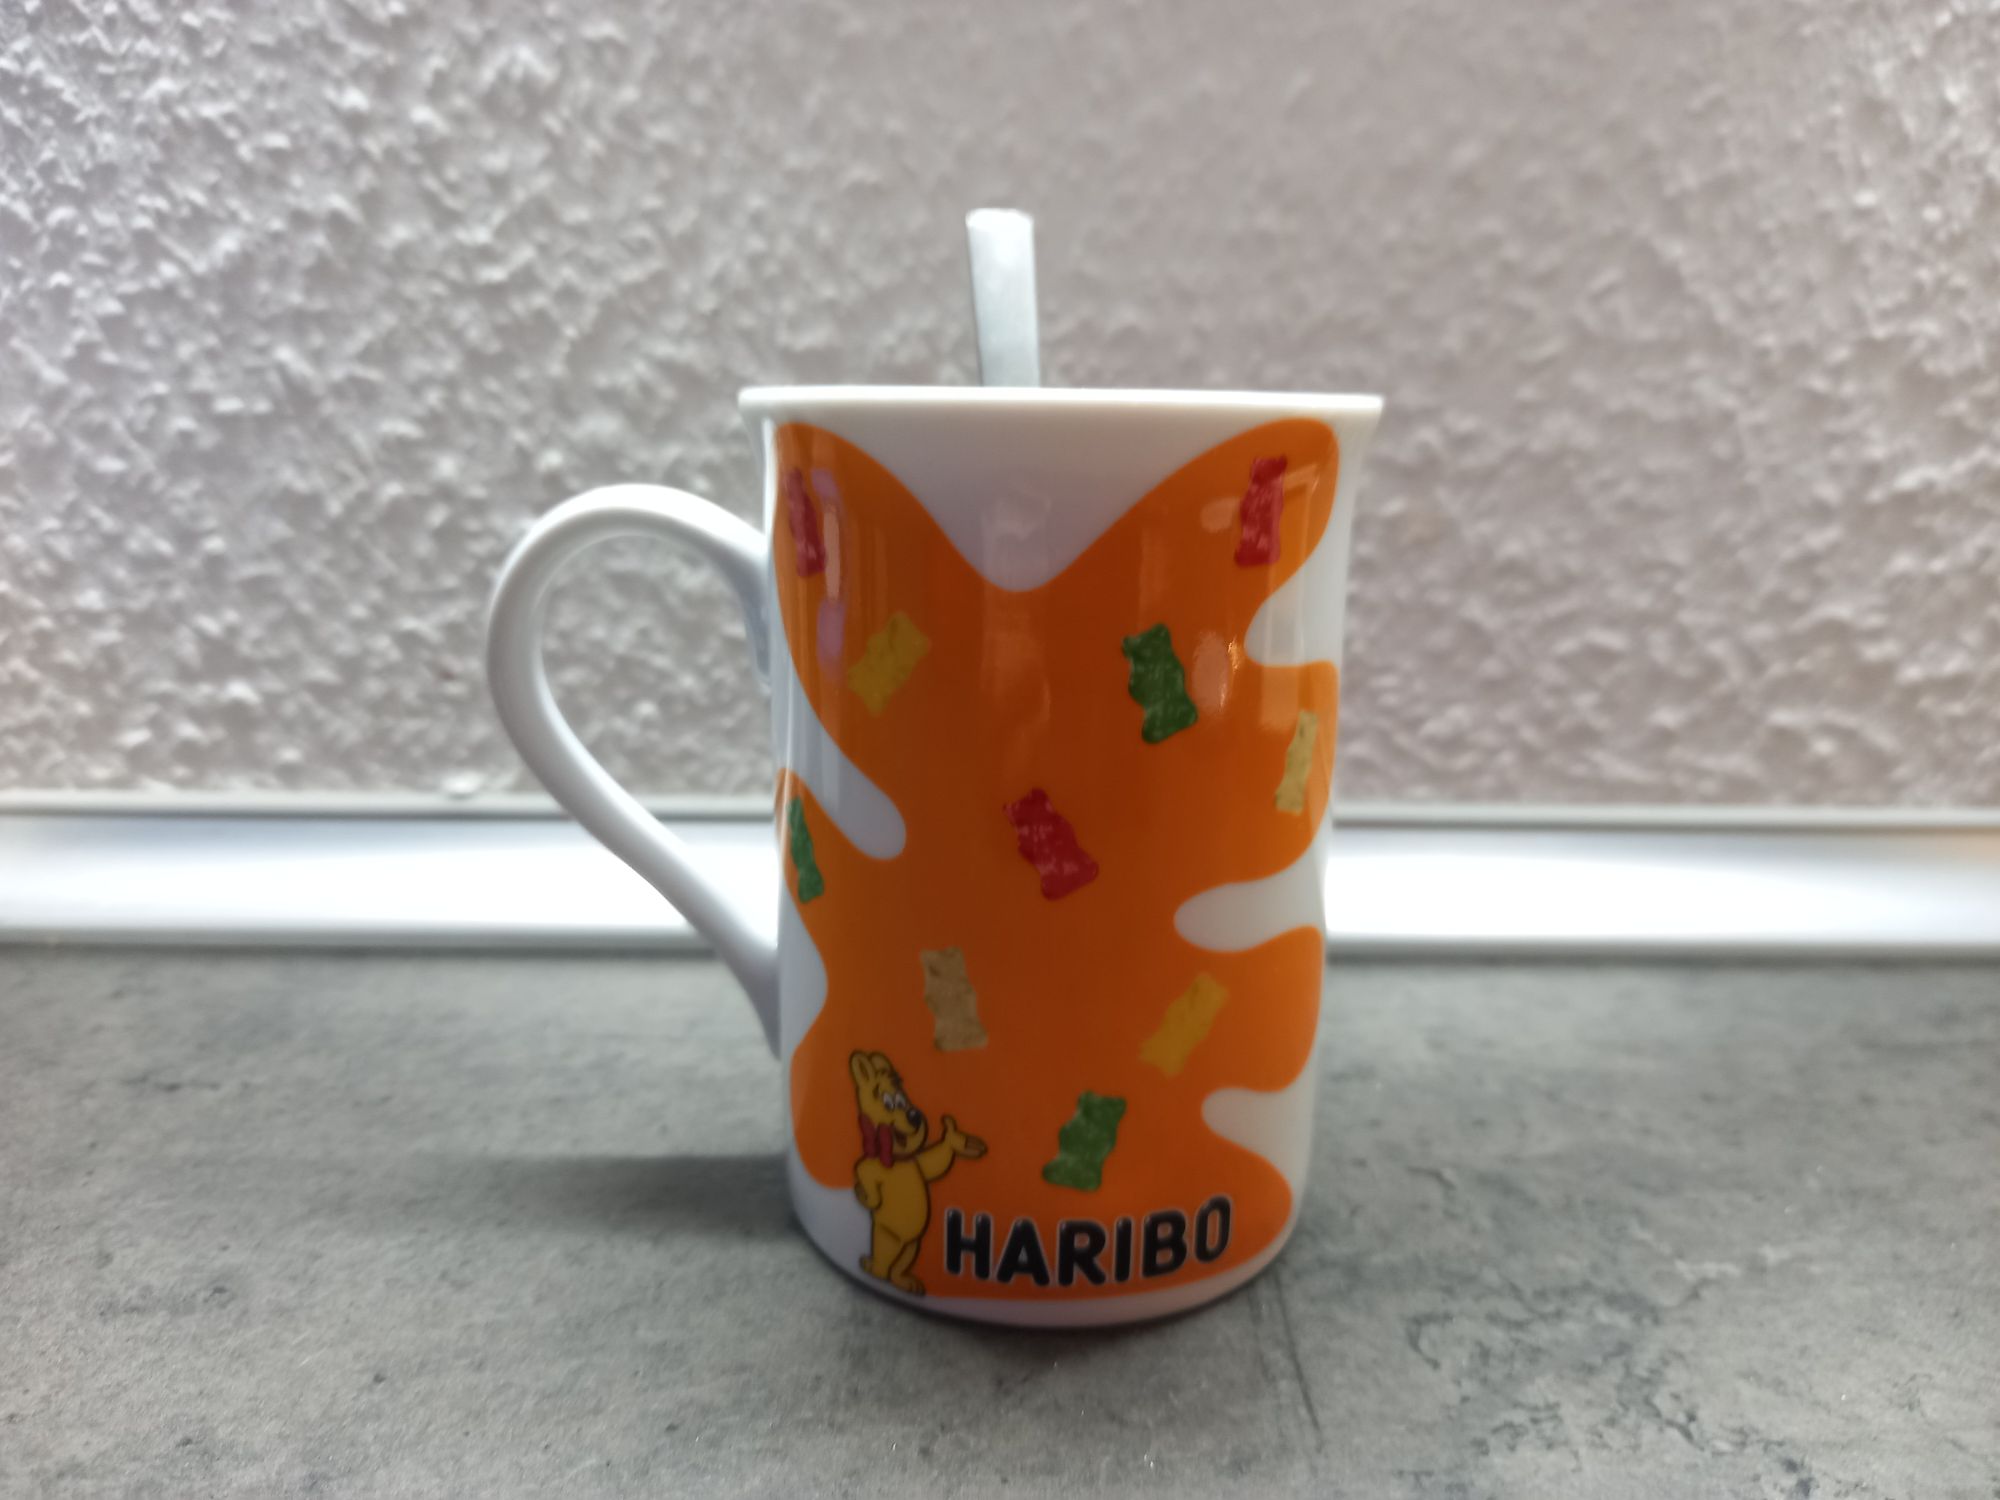 Die Tasse stammt aus einem Haribo-Store.